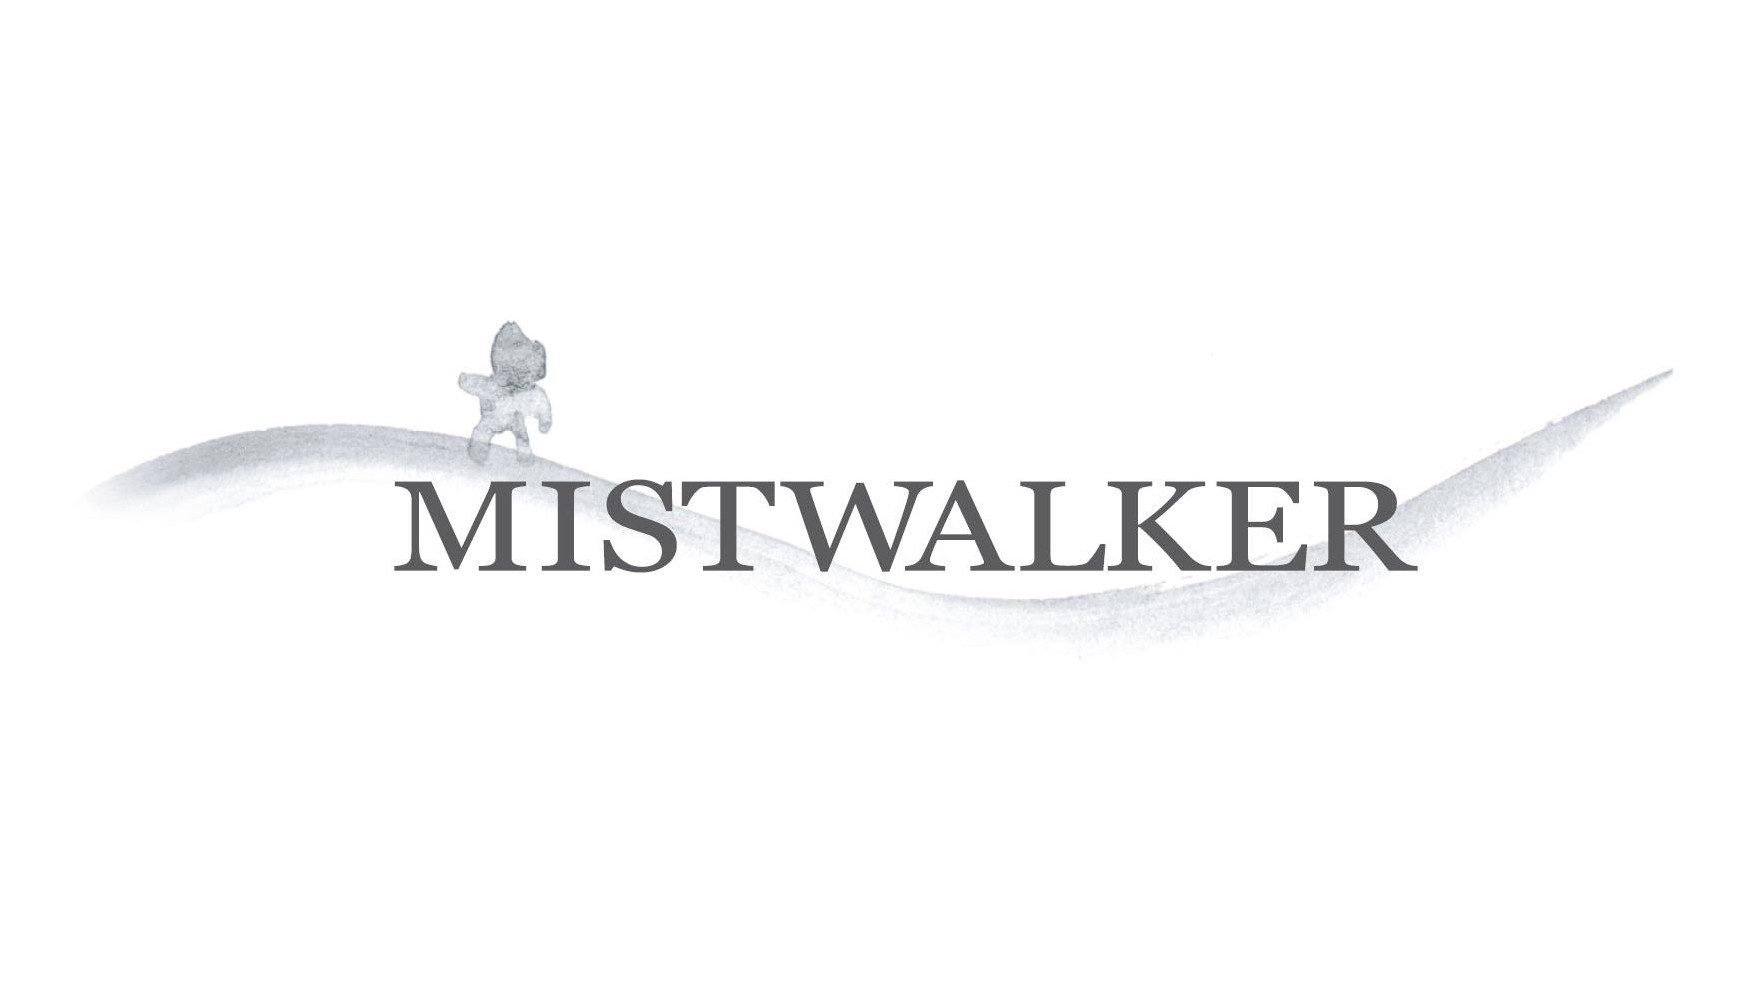 mistwalker logo game 2017